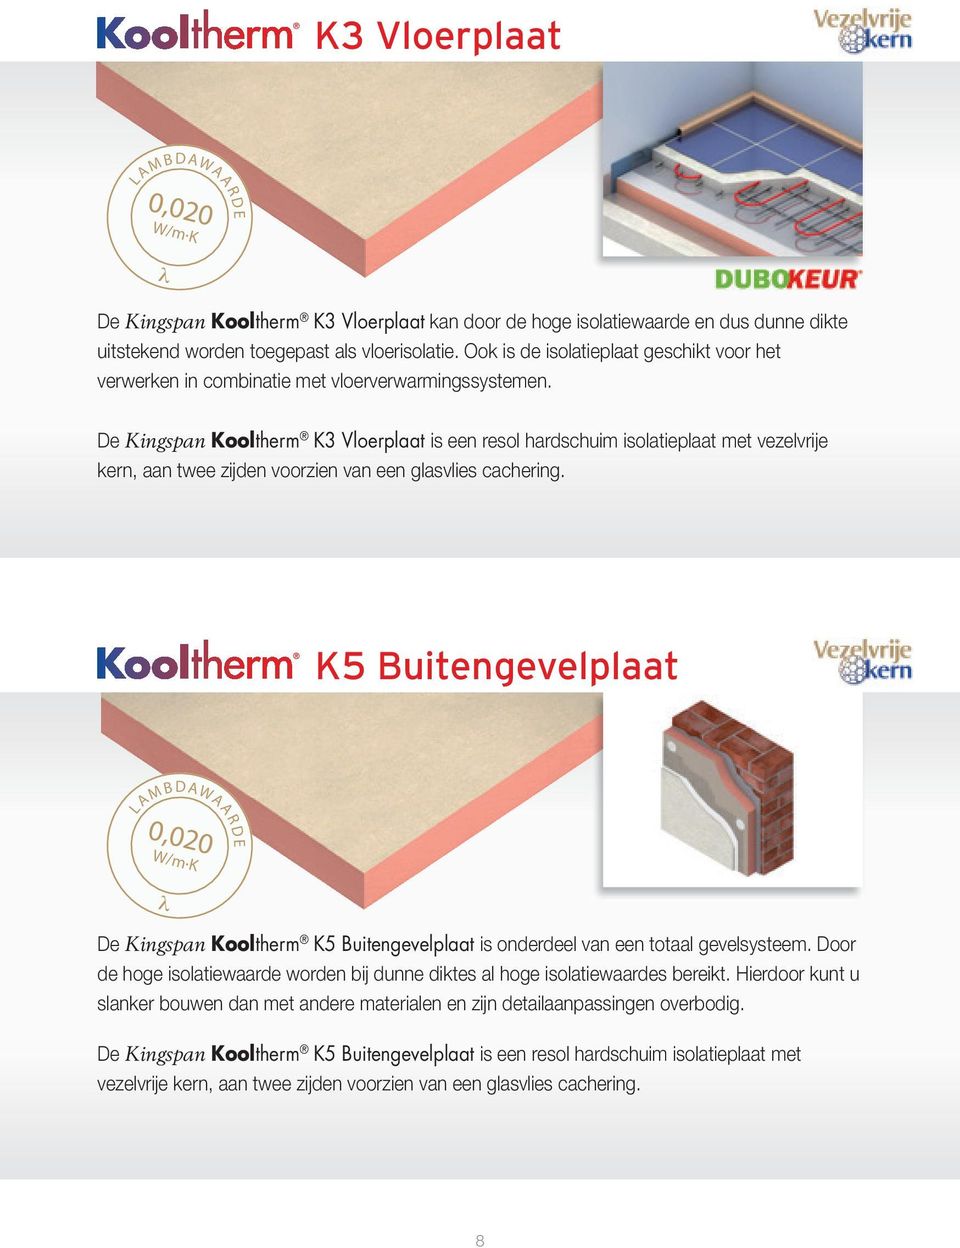 De Kingspan Kooltherm K3 Vloerplaat is een resol hardschuim isolatieplaat met vezelvrije kern, aan twee zijden voorzien van een glasvlies cachering. K5 Buitengevelplaat 0,020 LAMBDAWAARDE W/m.